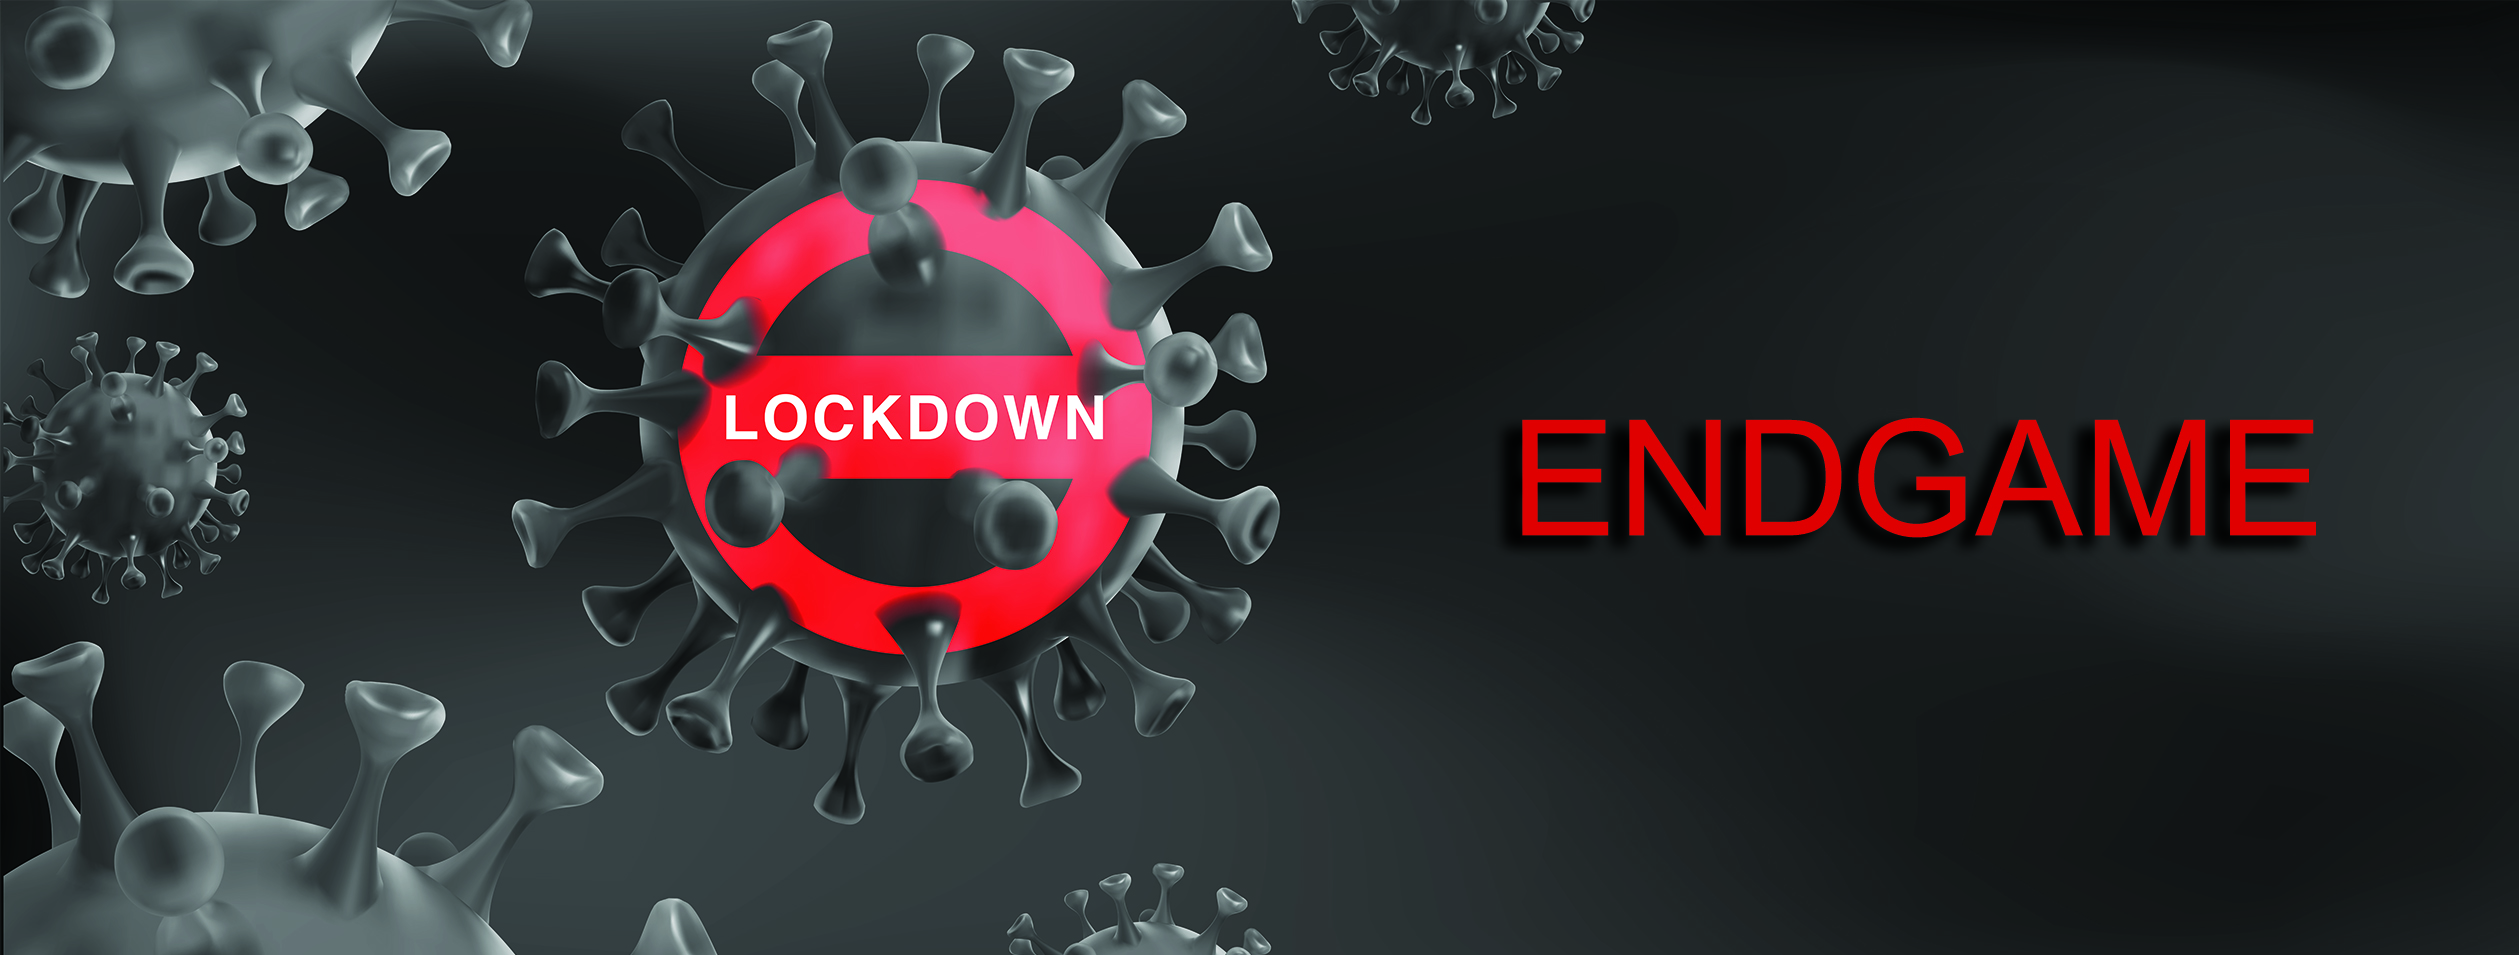 Lockdown & Endgame